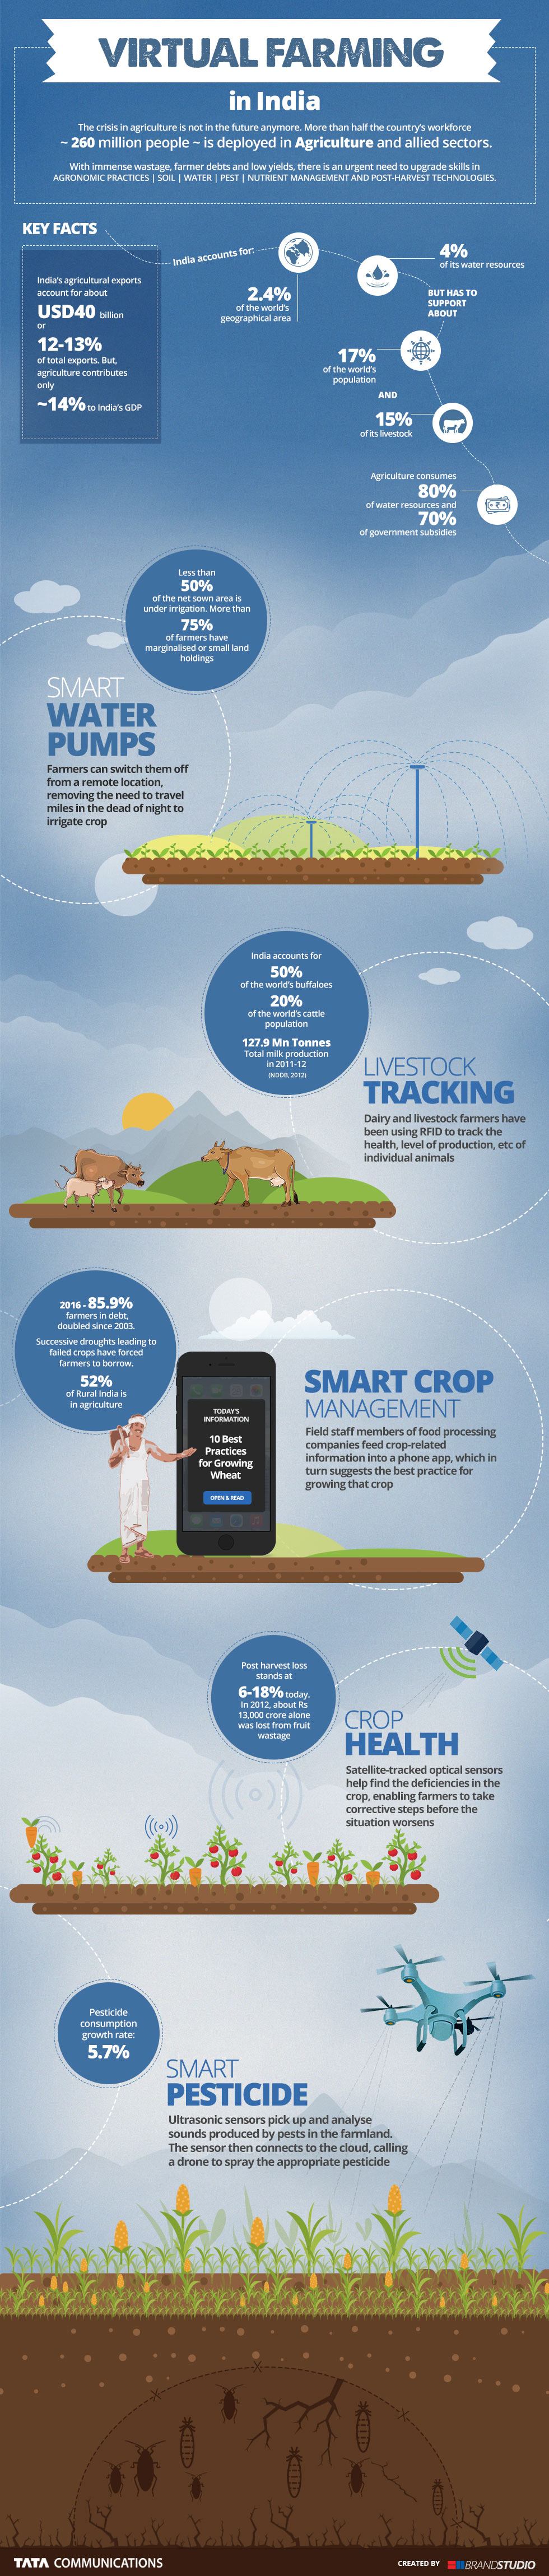 Virtual Farming in India